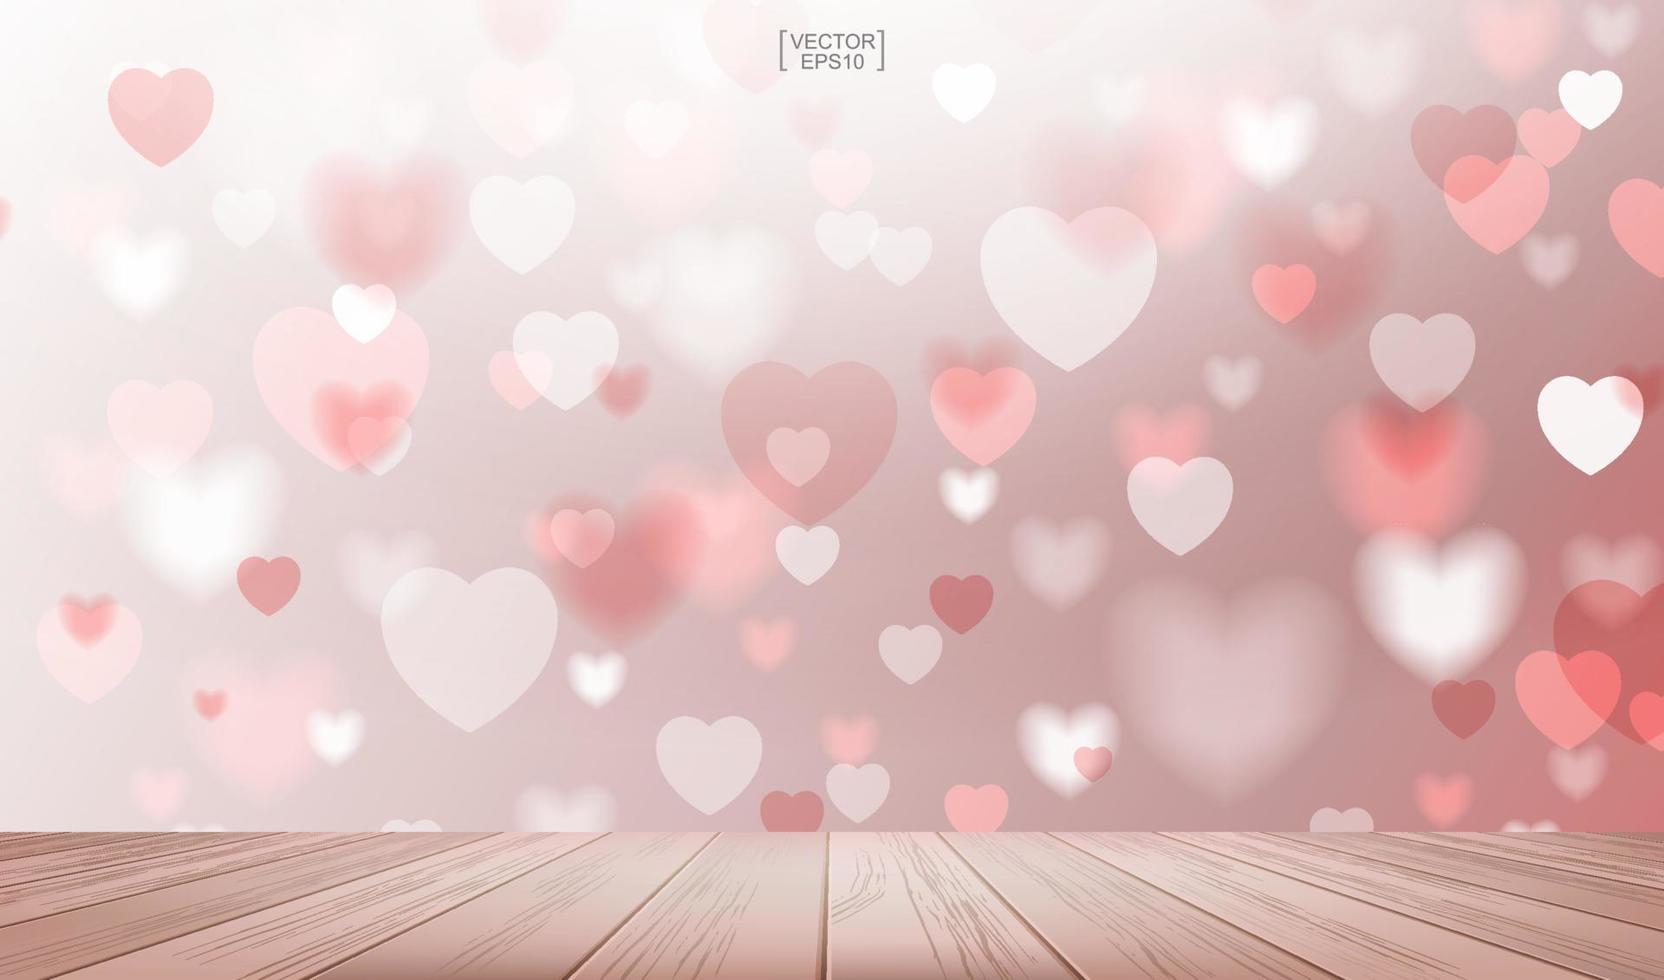 piso de madera con fondo borroso de corazón usado para tarjeta de felicitación y tarjeta de boda. vector. vector